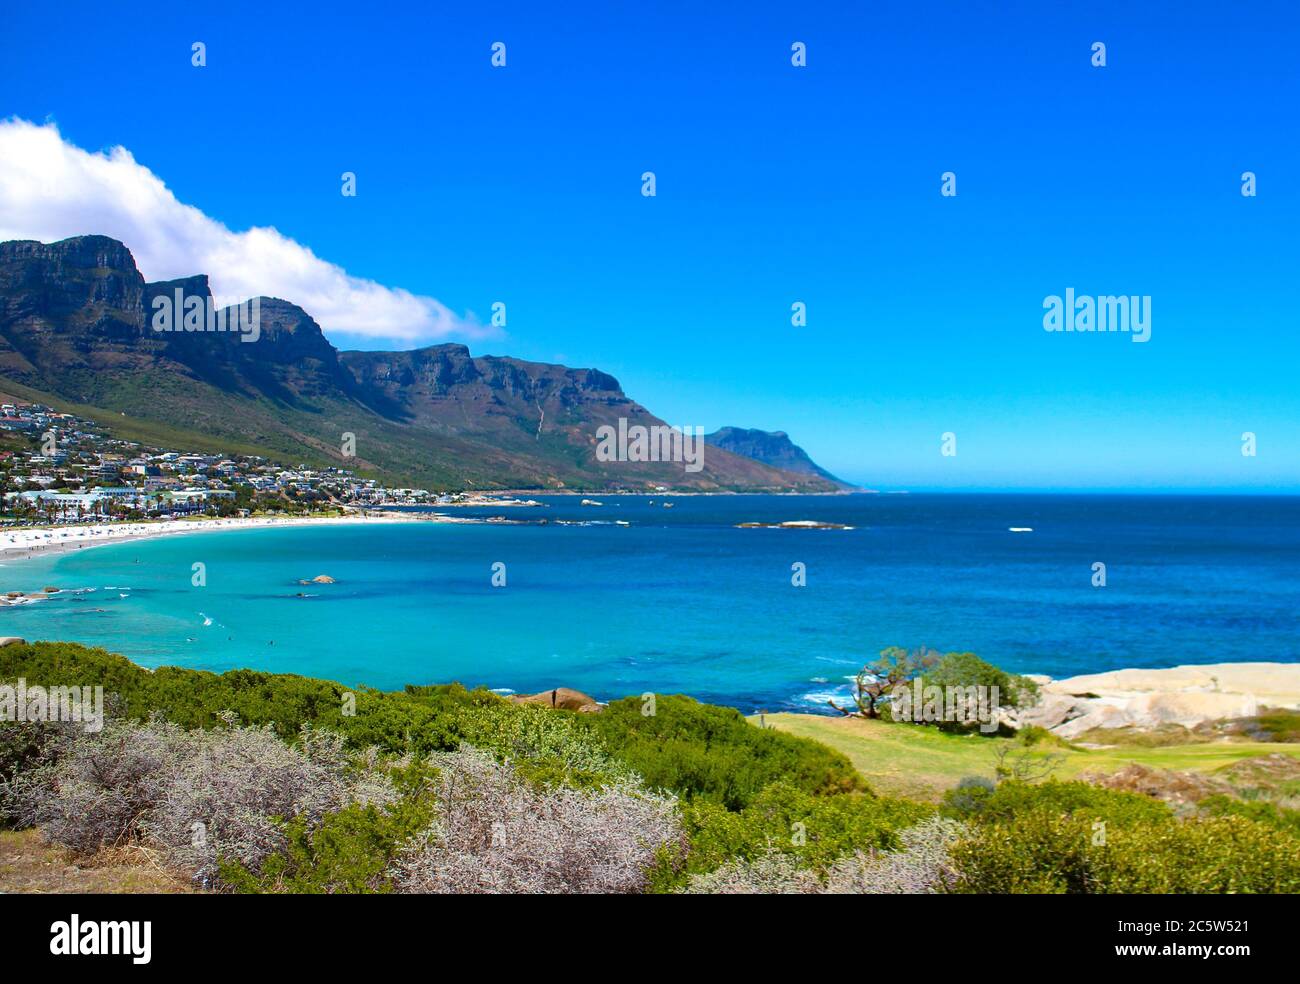 Camps Bay e i dodici apostoli al Table Mountain National Park di Città del Capo, Capo Occidentale, Sud Africa. Foto Stock